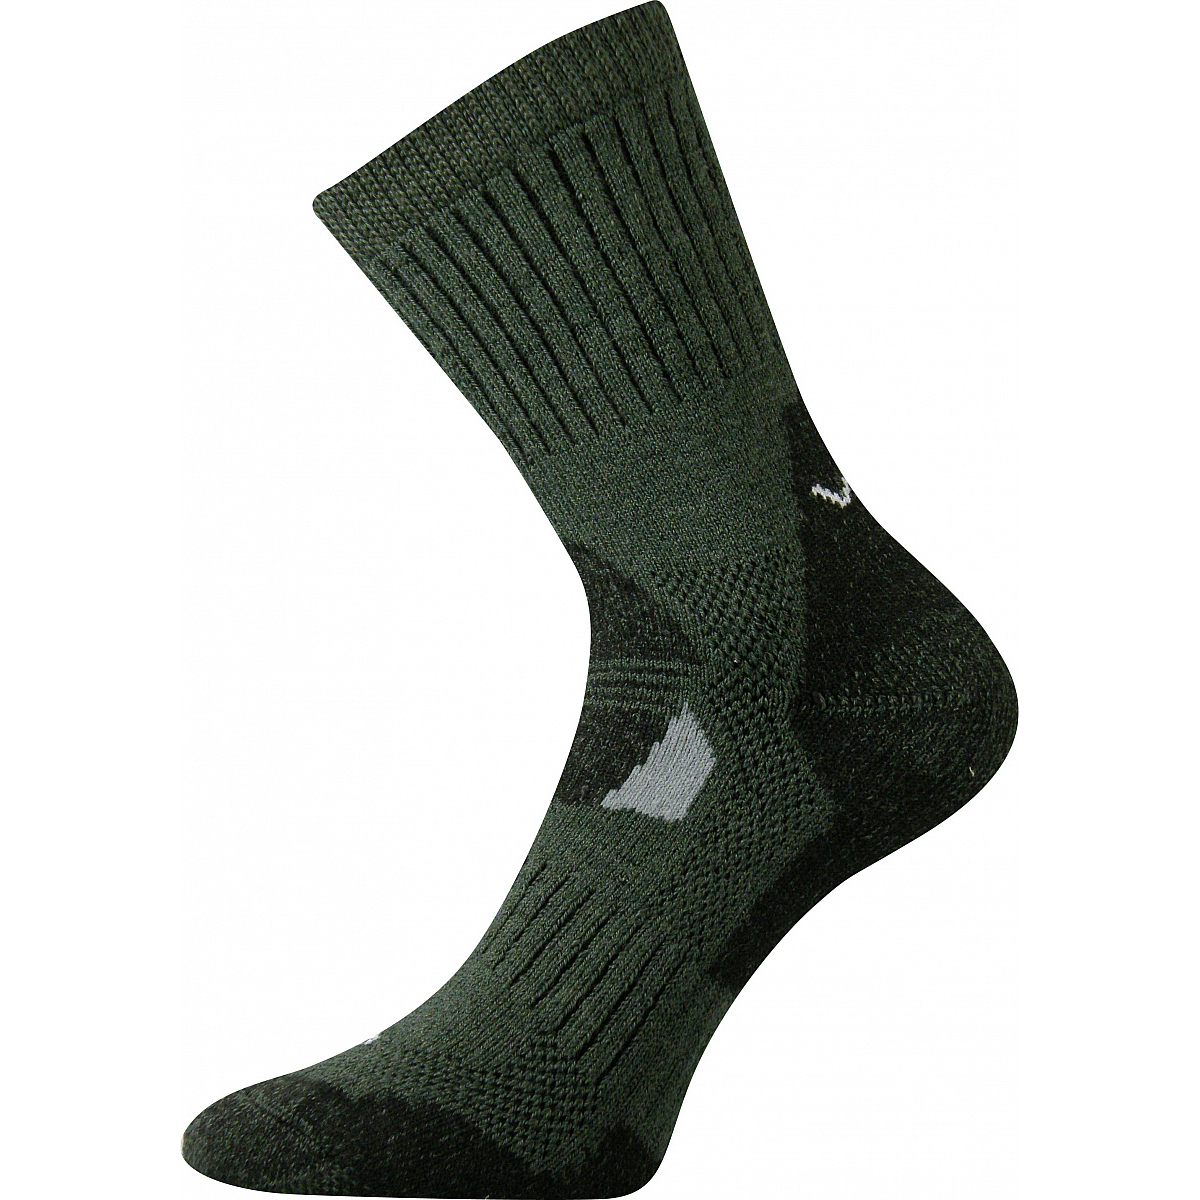 Extra teplé vlněné ponožky Voxx Stabil - olivové, 43-46